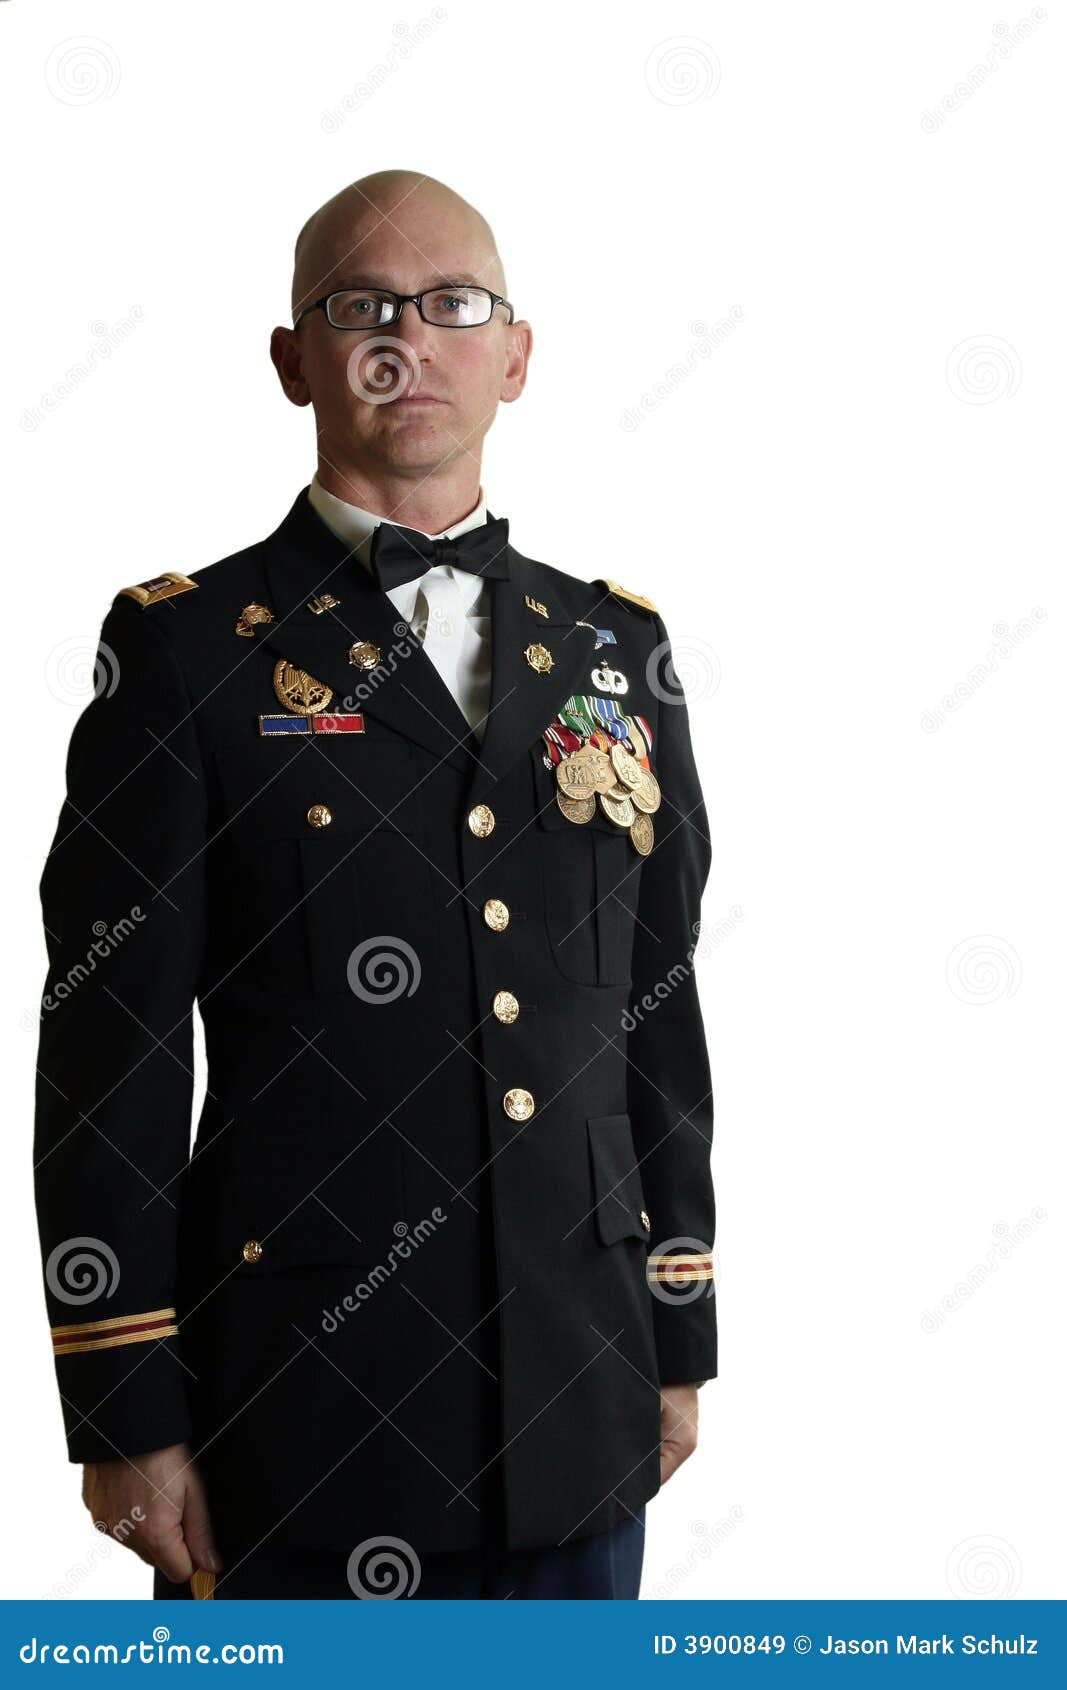 army dress uniform enlisted